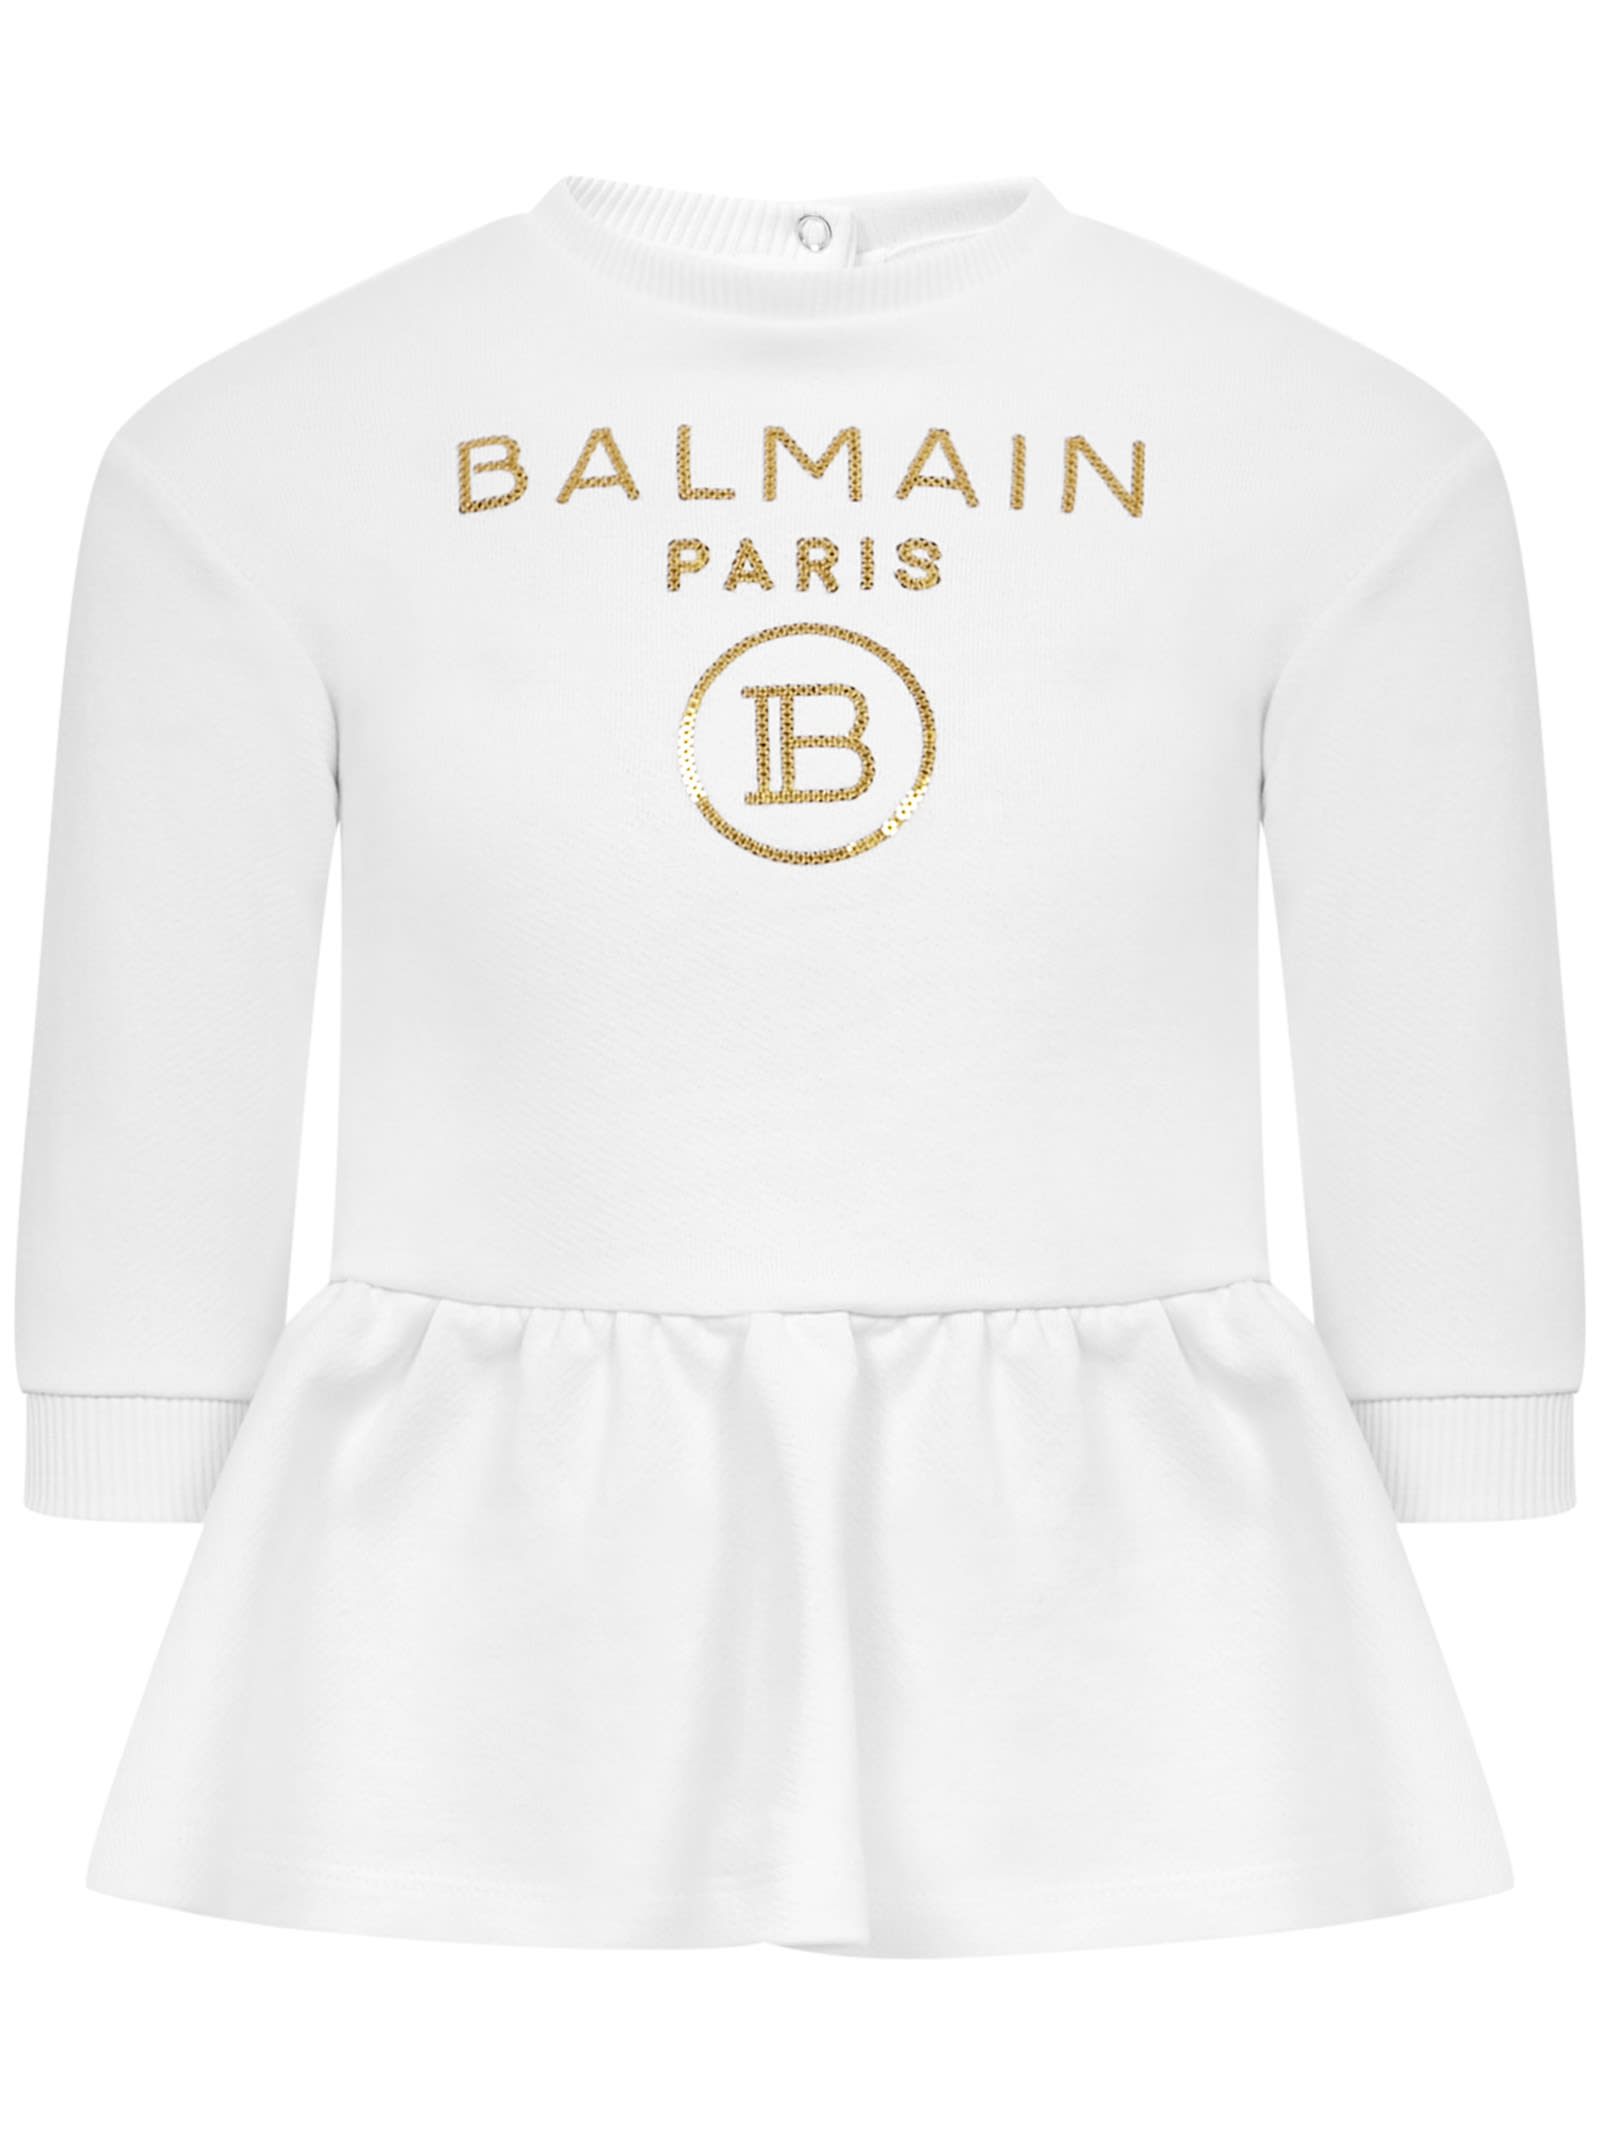 BALMAIN PARIS KIDS DRESS,6O1830OX360 100